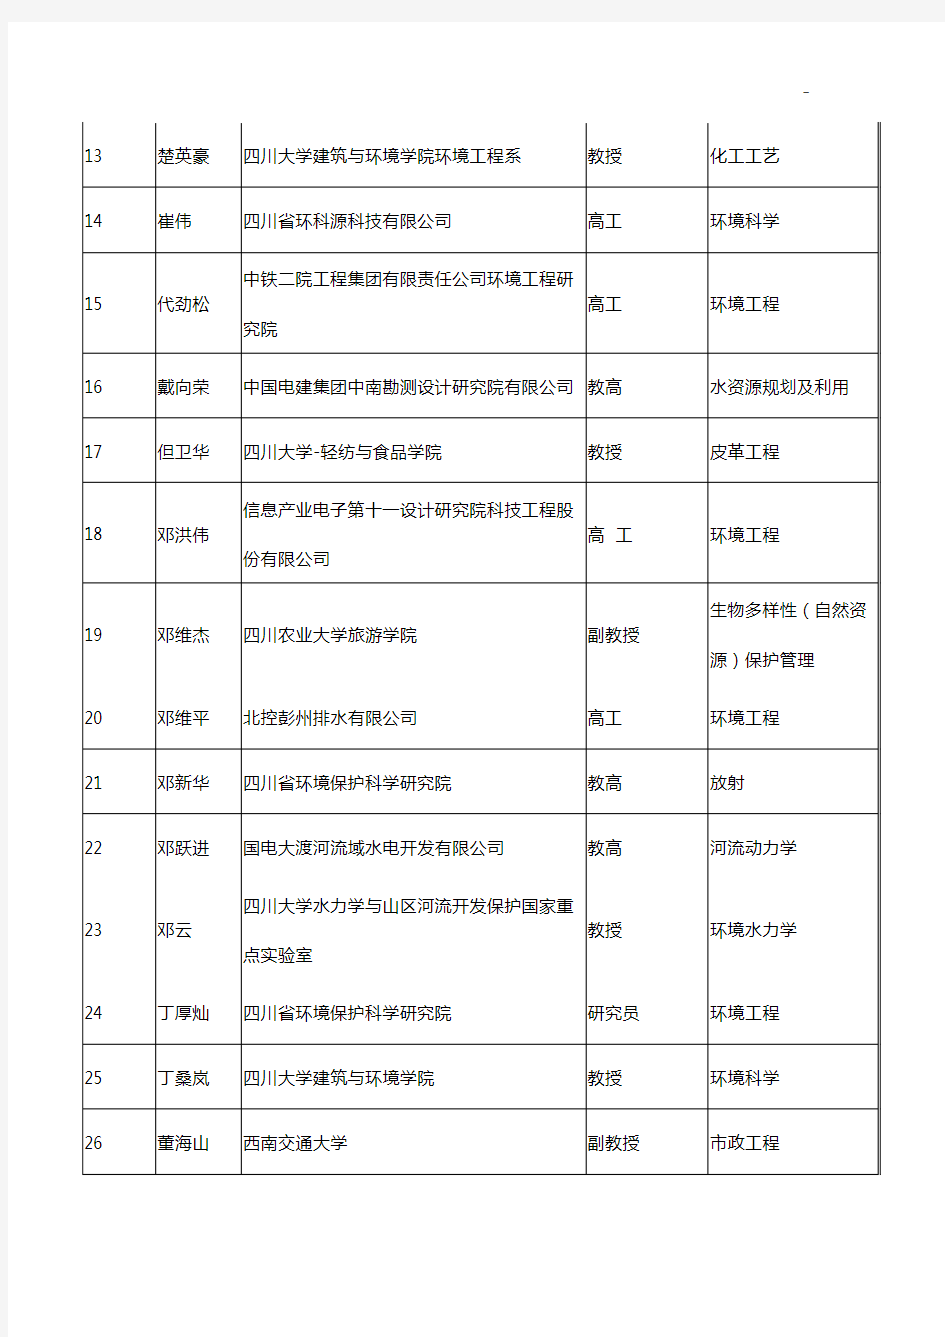 四川地区环境工程评估中心四川地区环评分析专家库名单资料(2018年度5月更新)